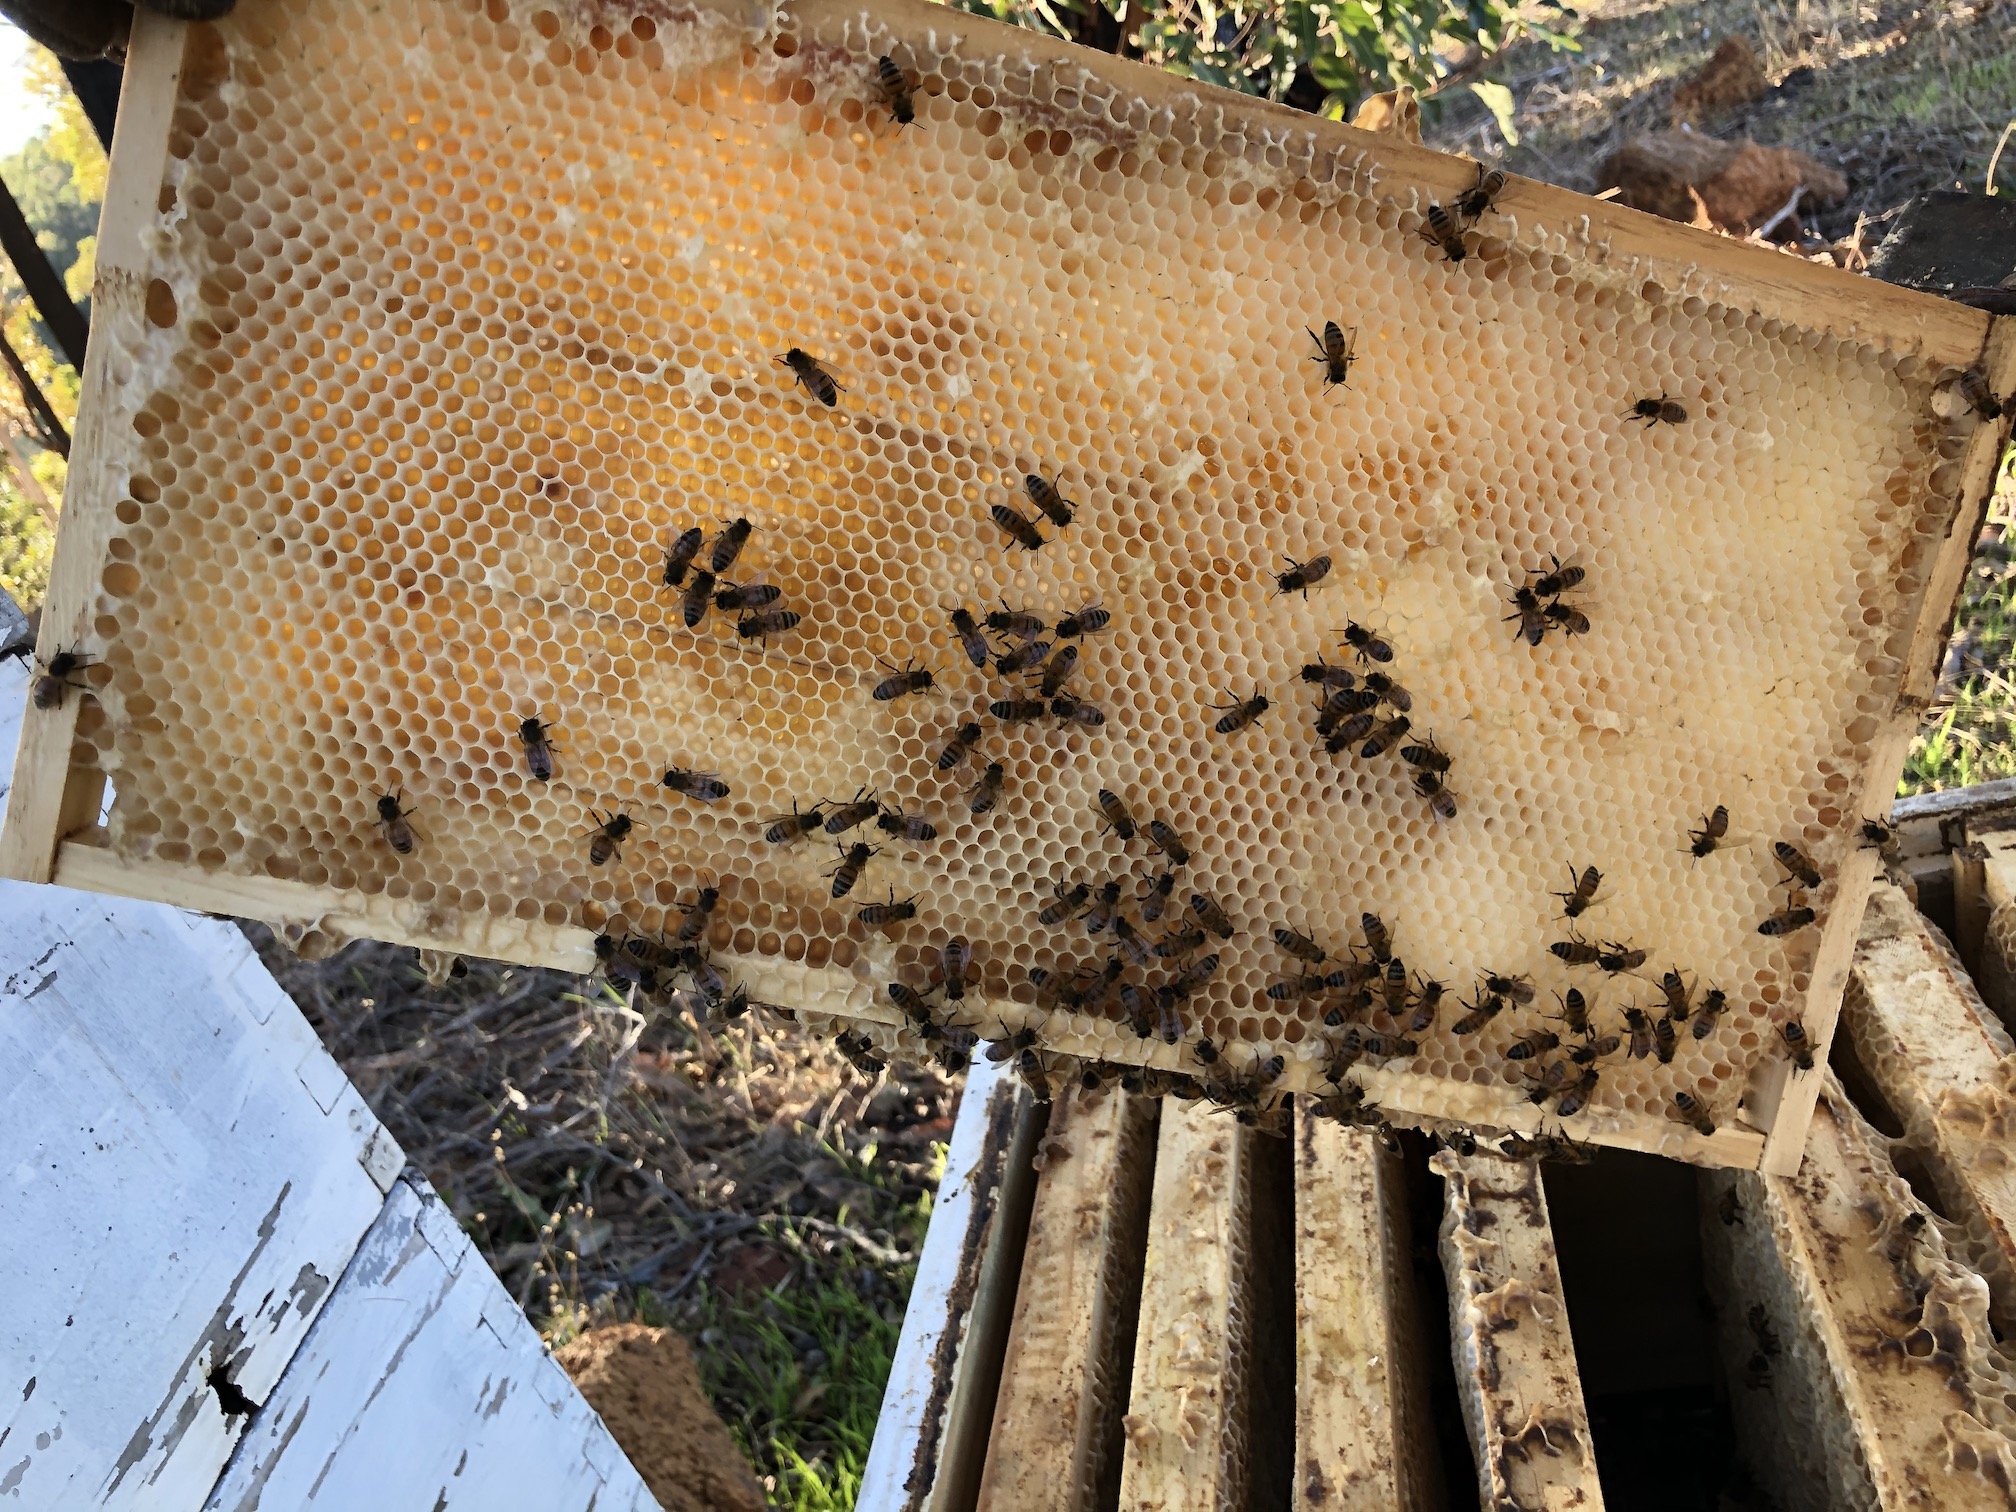 2020-06-21  Bee-hive at Yarloop